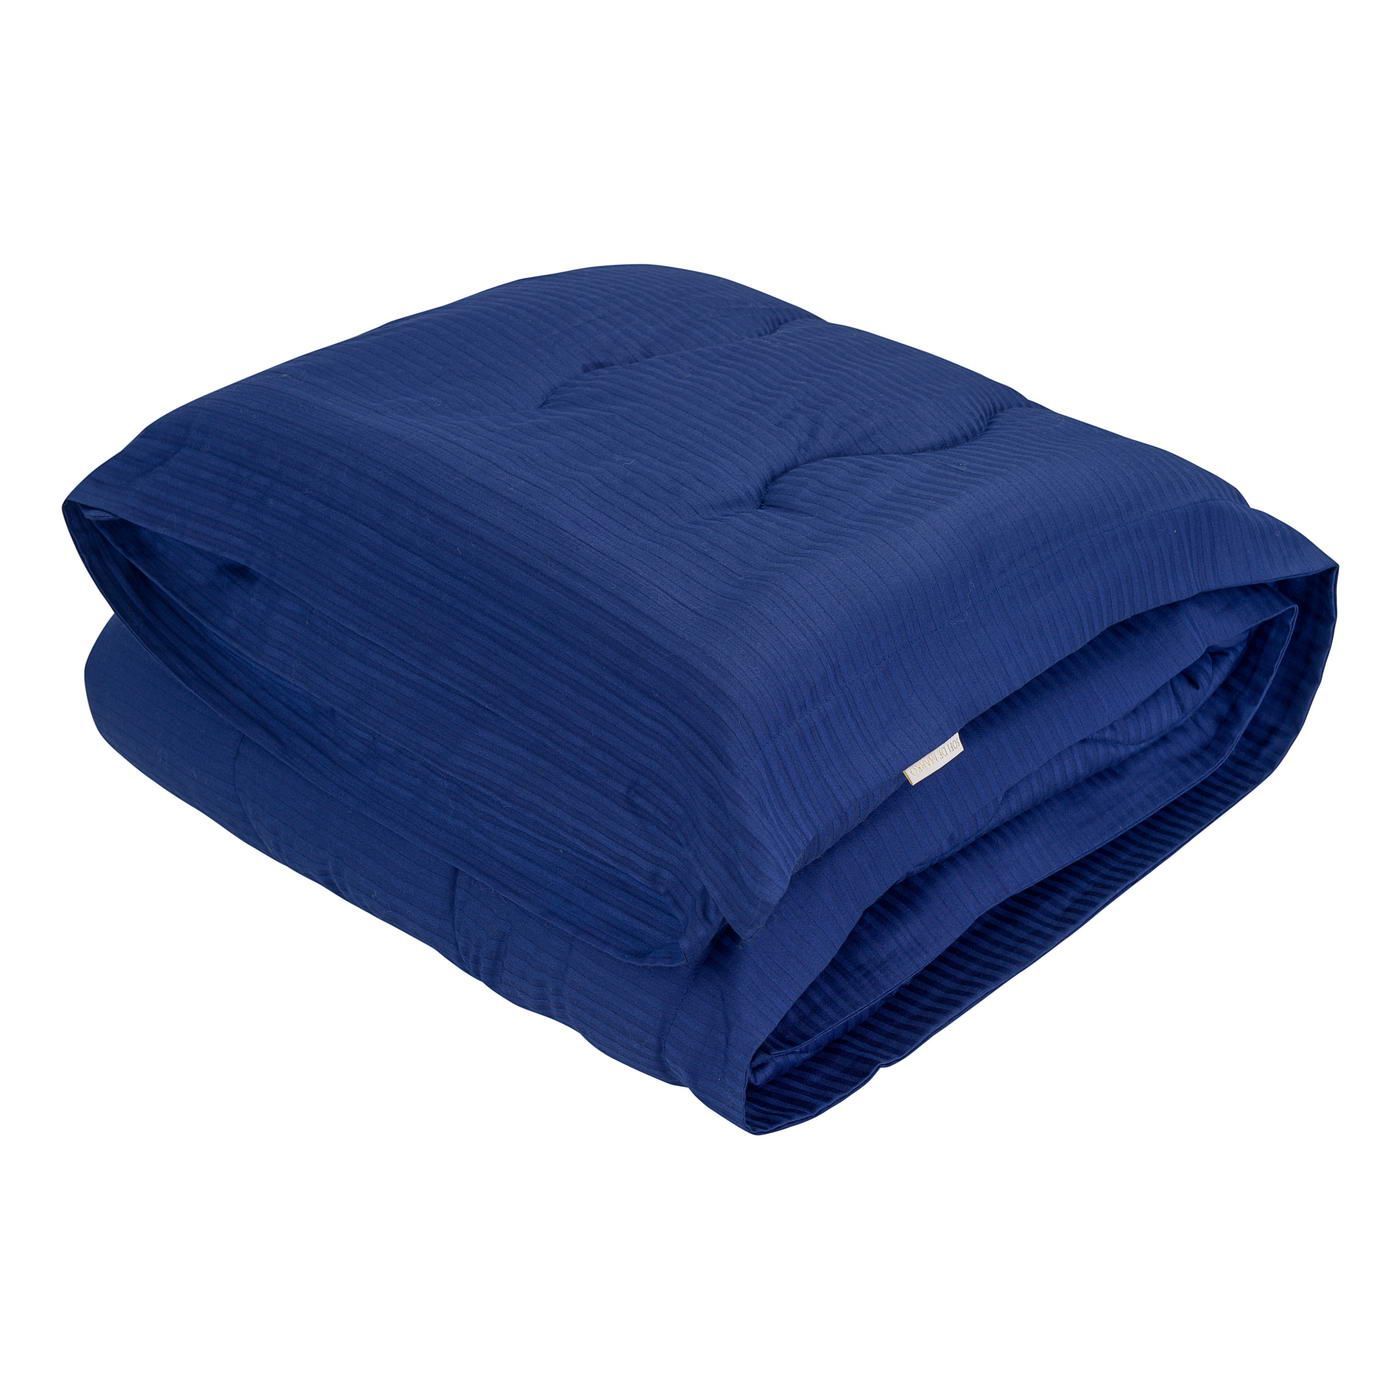 Одеяло-покрывало Тиффани цвет: сапфировый (155х220 см), размер 155х220 см sofi973248 Одеяло-покрывало Тиффани цвет: сапфировый (155х220 см) - фото 1